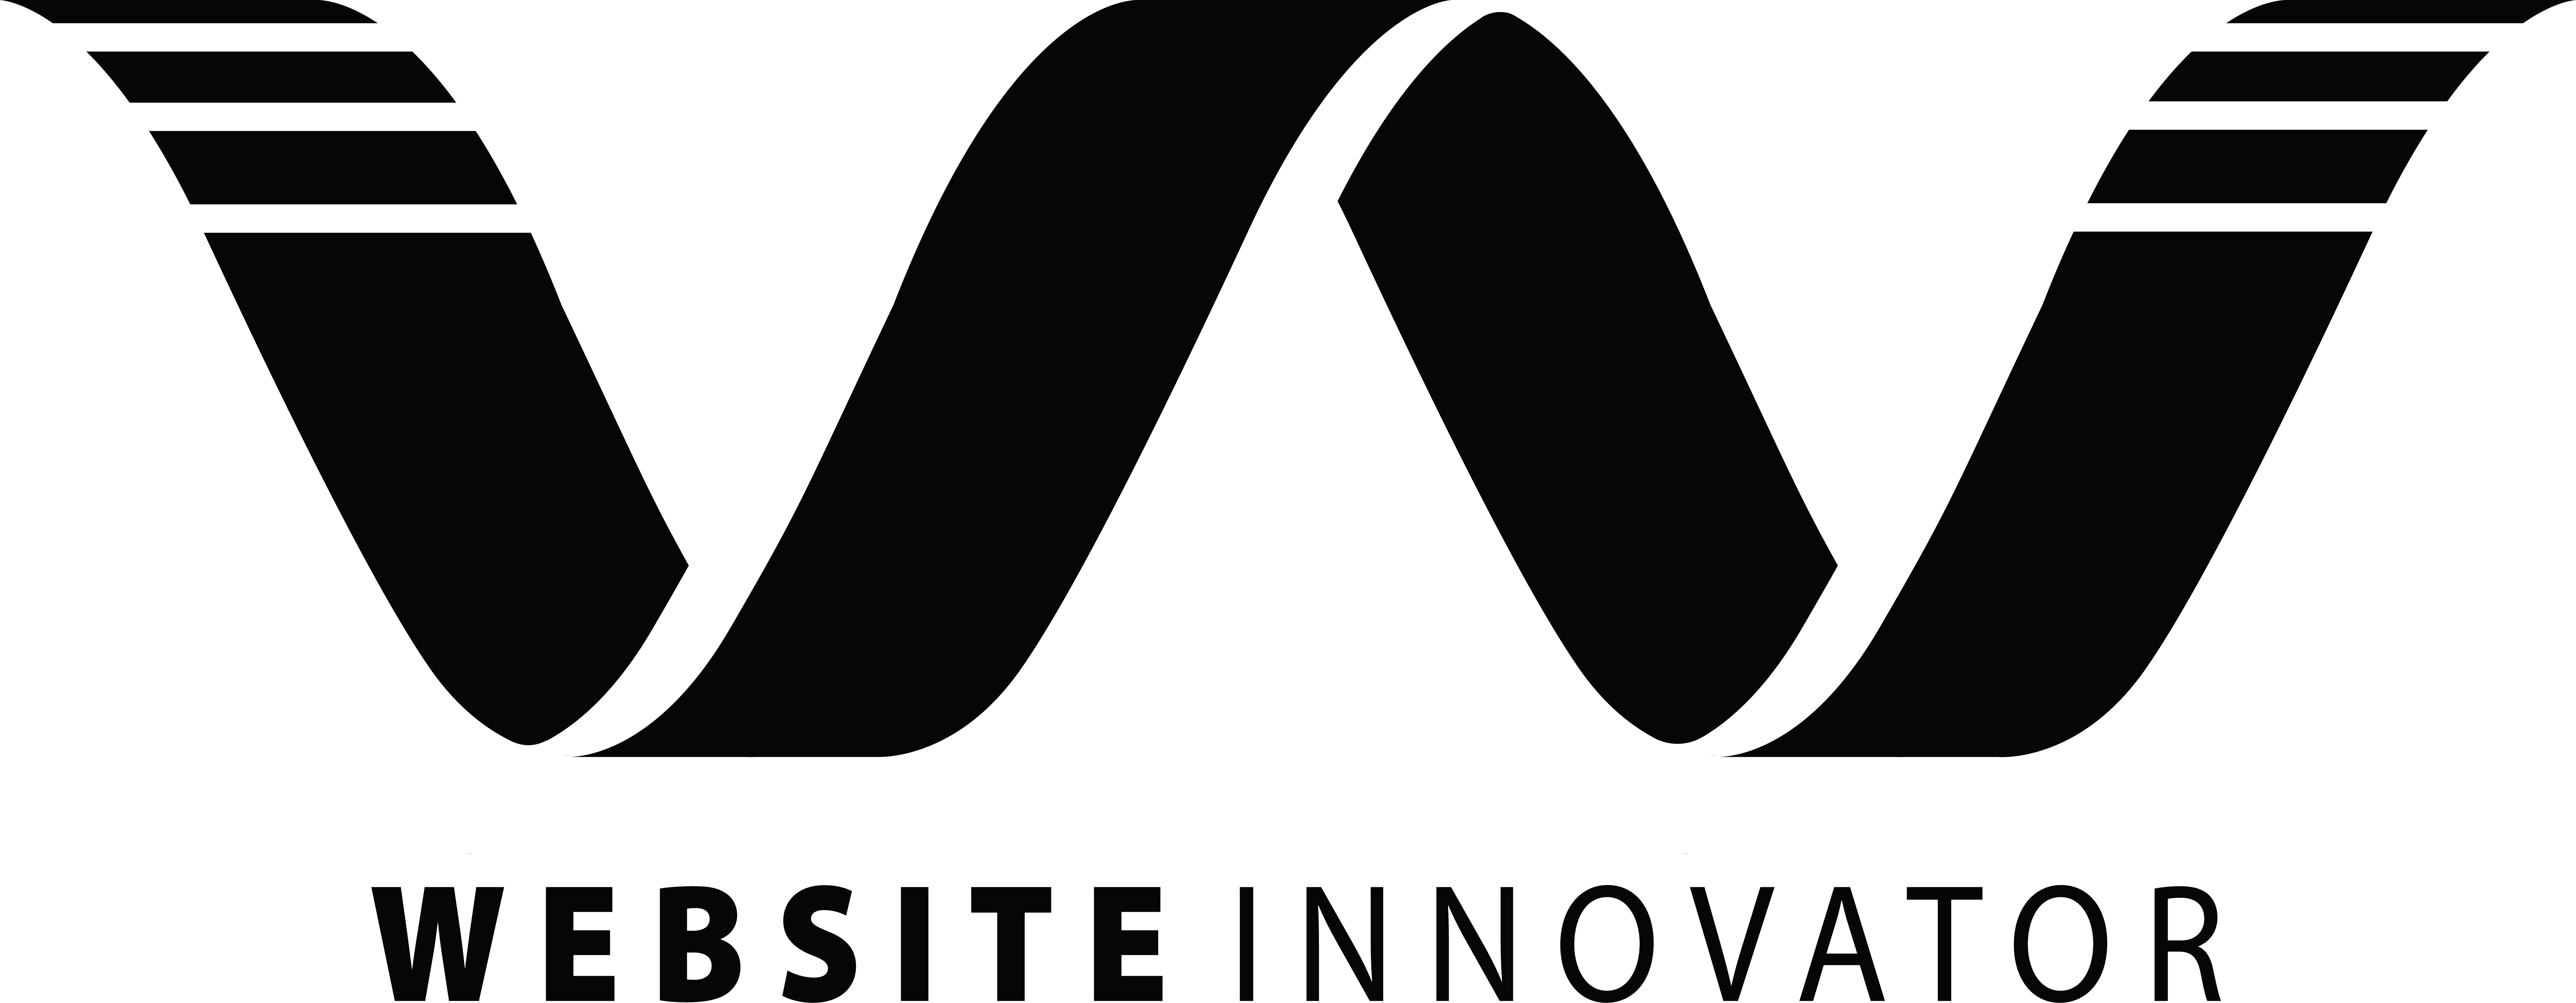 Website Innovator Logo